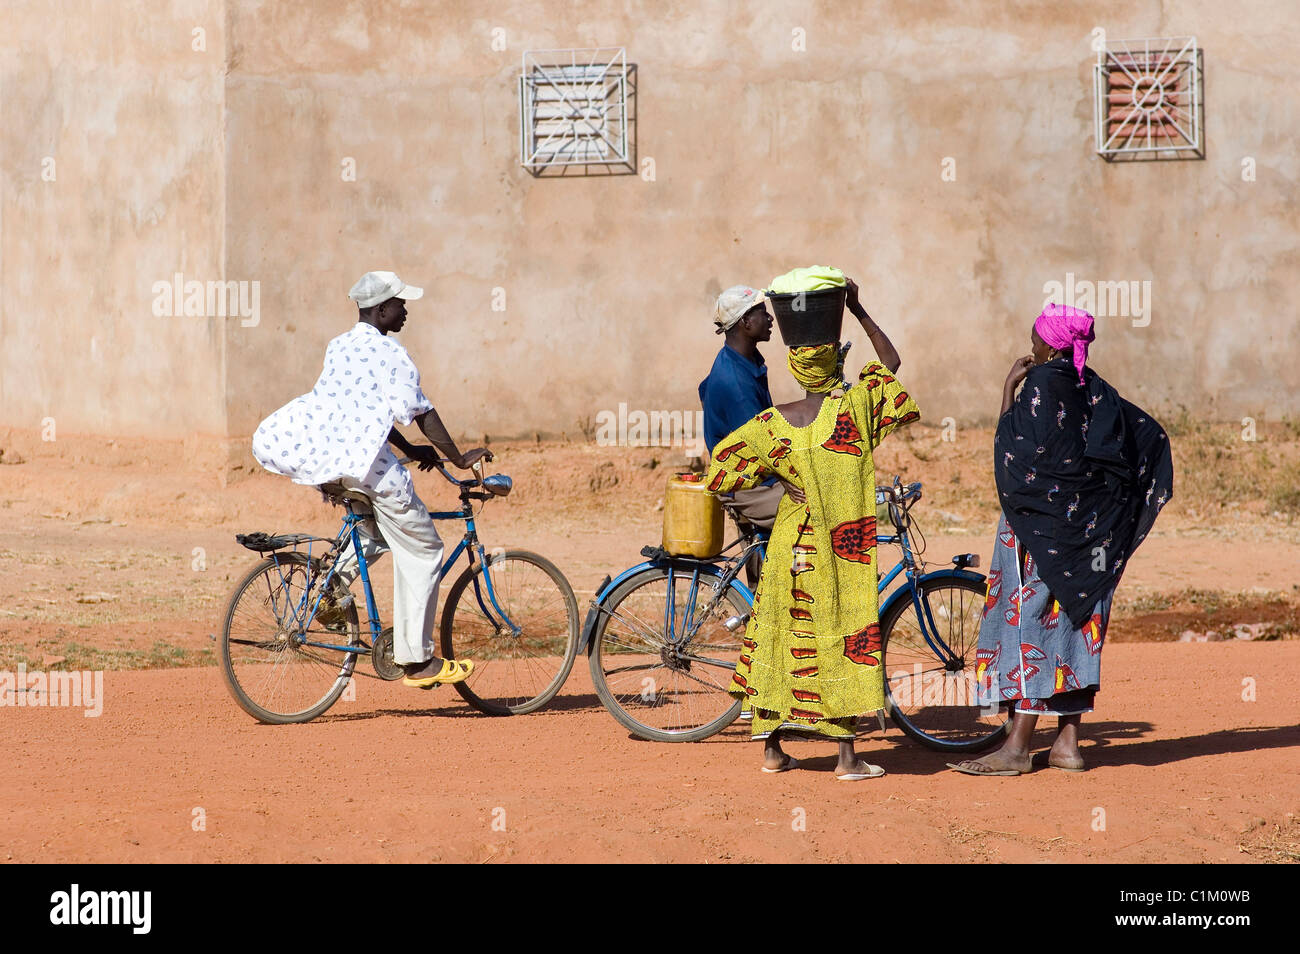 La ville de Sikasso, Mali Banque D'Images